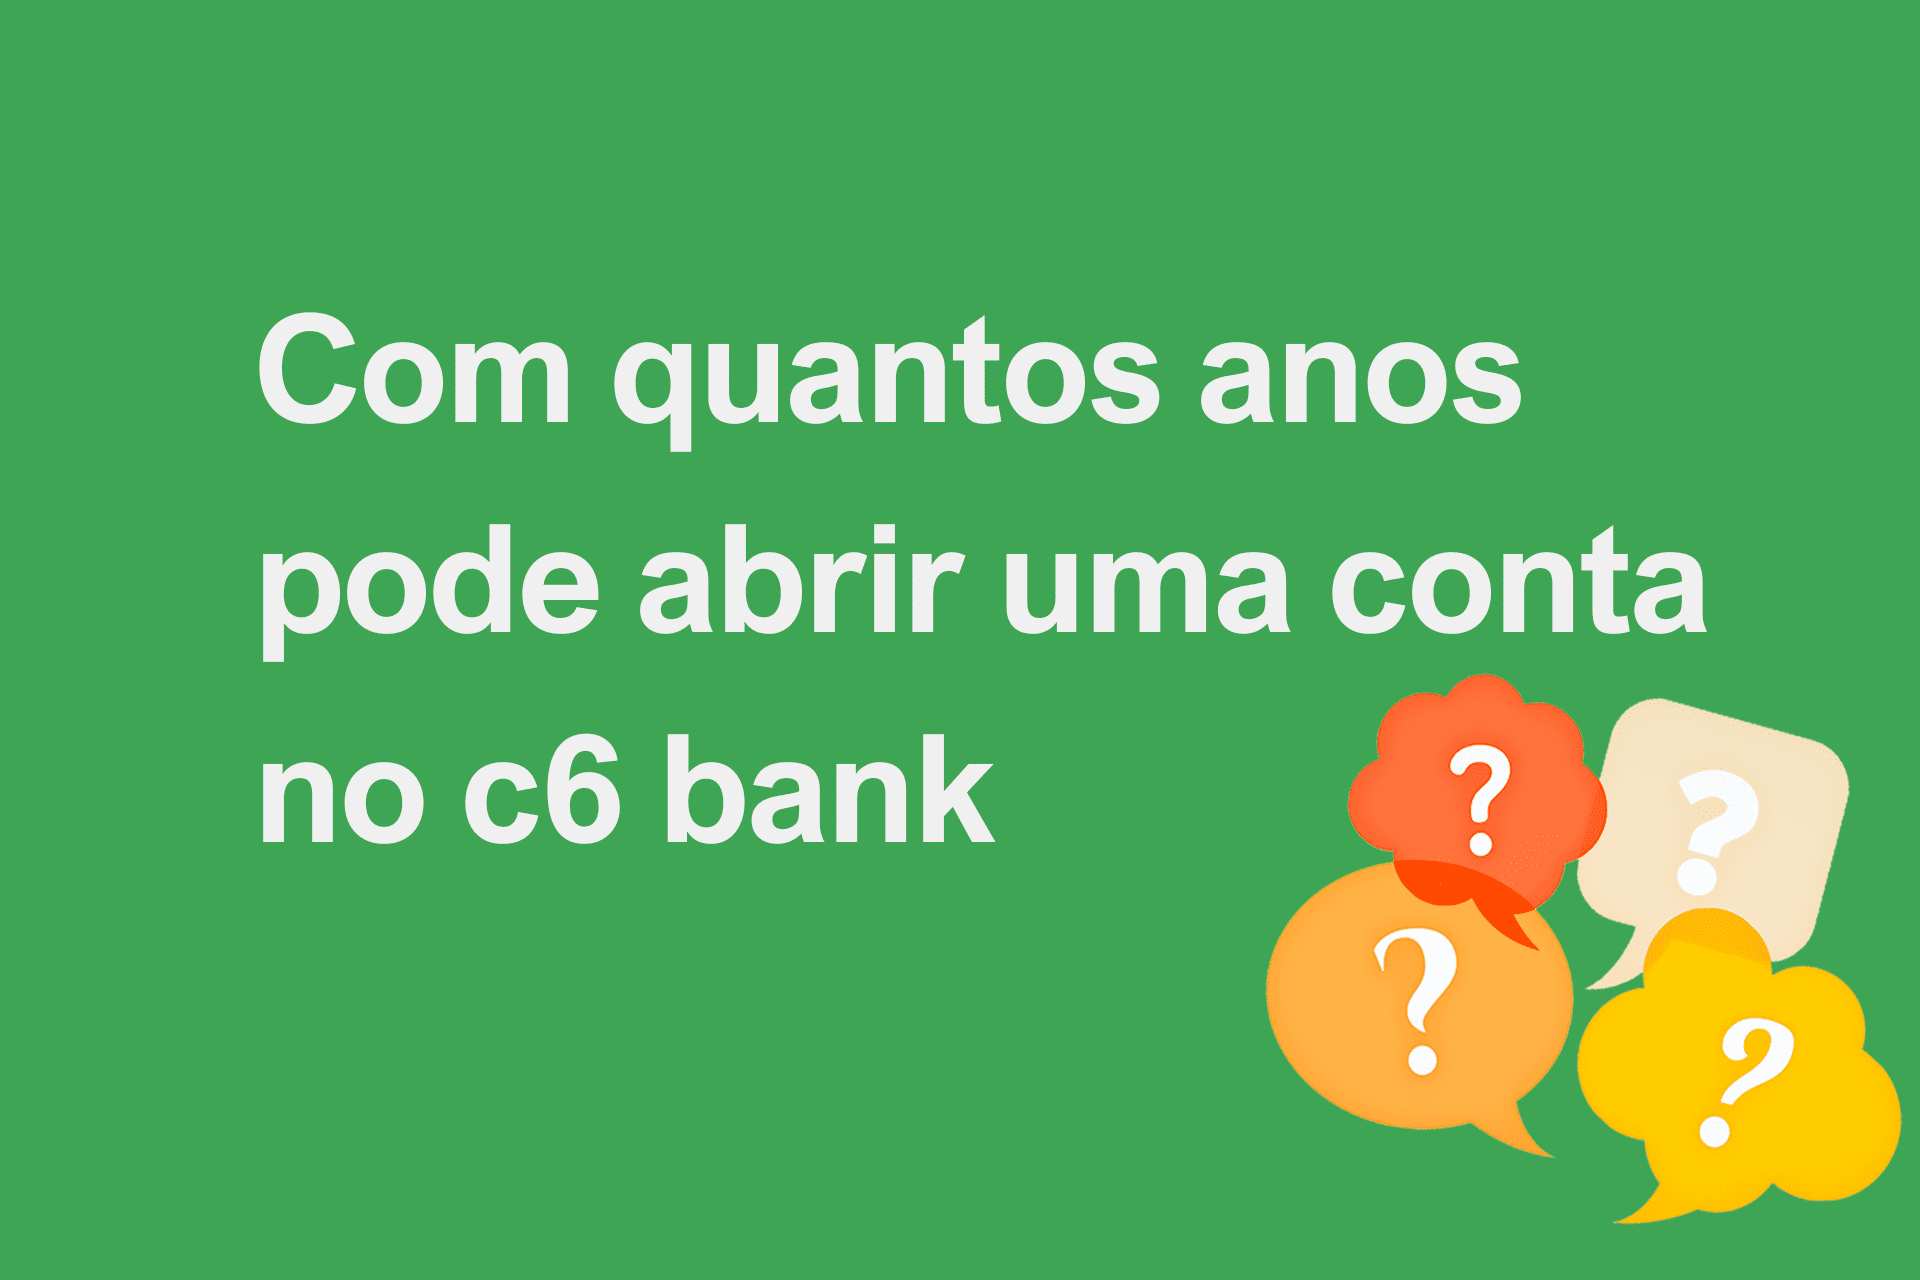 Com quantos anos pode abrir uma conta no c6 bank?